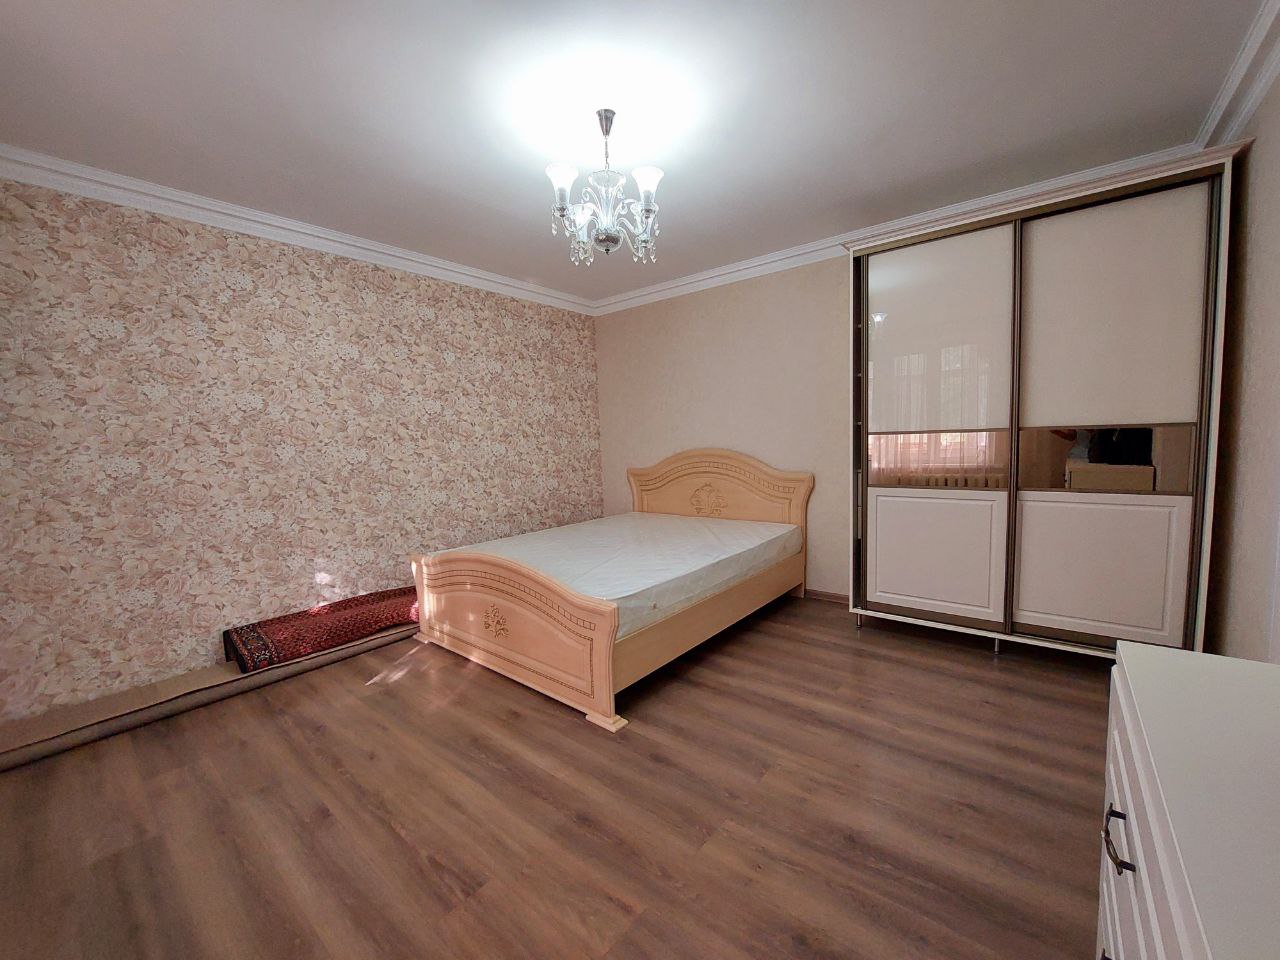 VÂNDUT Apartament de vânzare, Chișinău, sec. Ciocana, seria 143, 2 odăi, 55m2, et.1